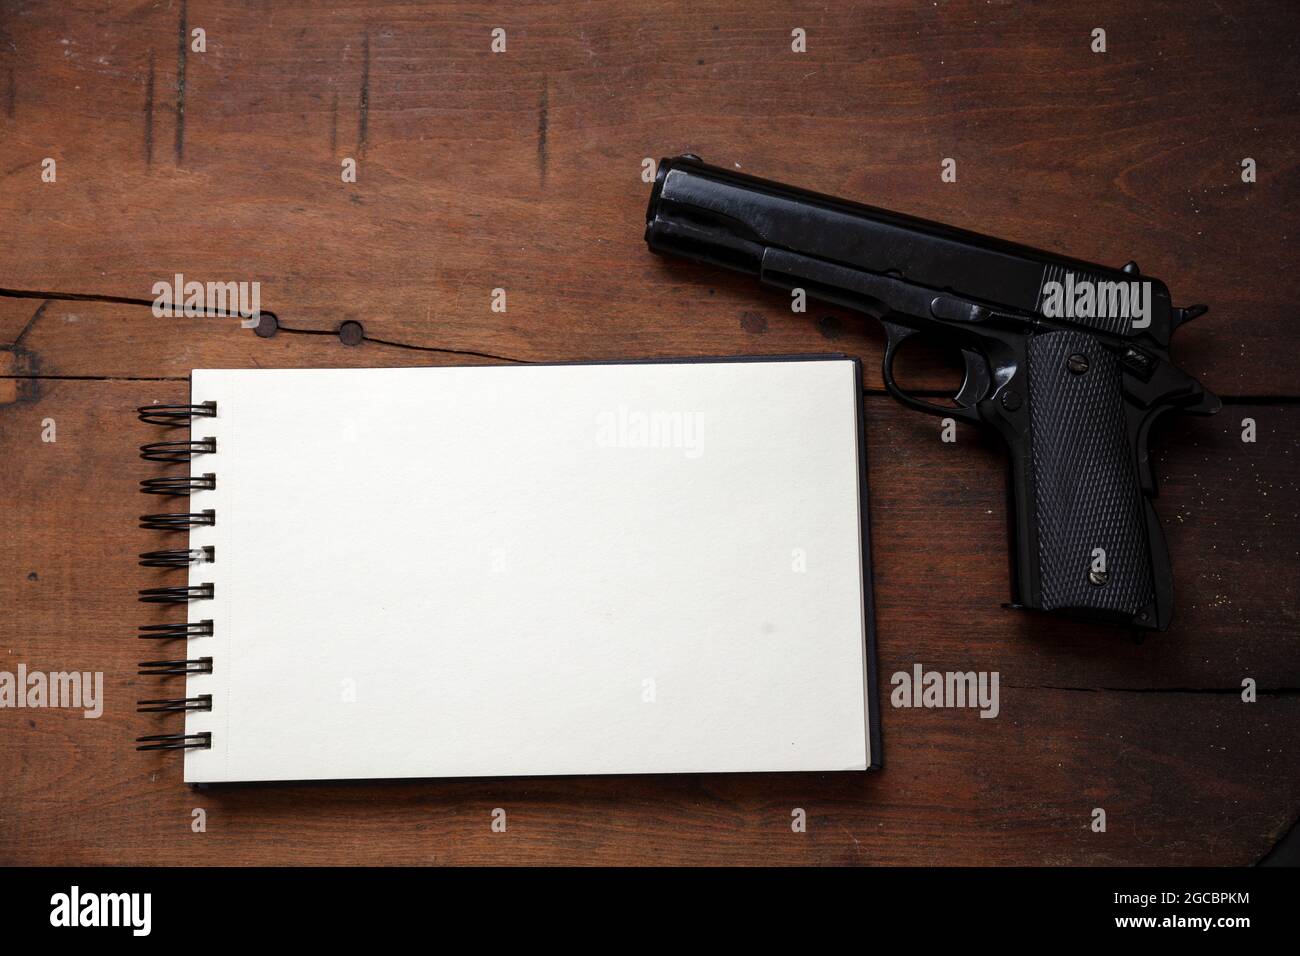 Note de suicide, concept de liste noire. Bloc-notes vierge et pistolet sur fond de table en bois, vue du dessus. Copier le modèle d'espace Banque D'Images